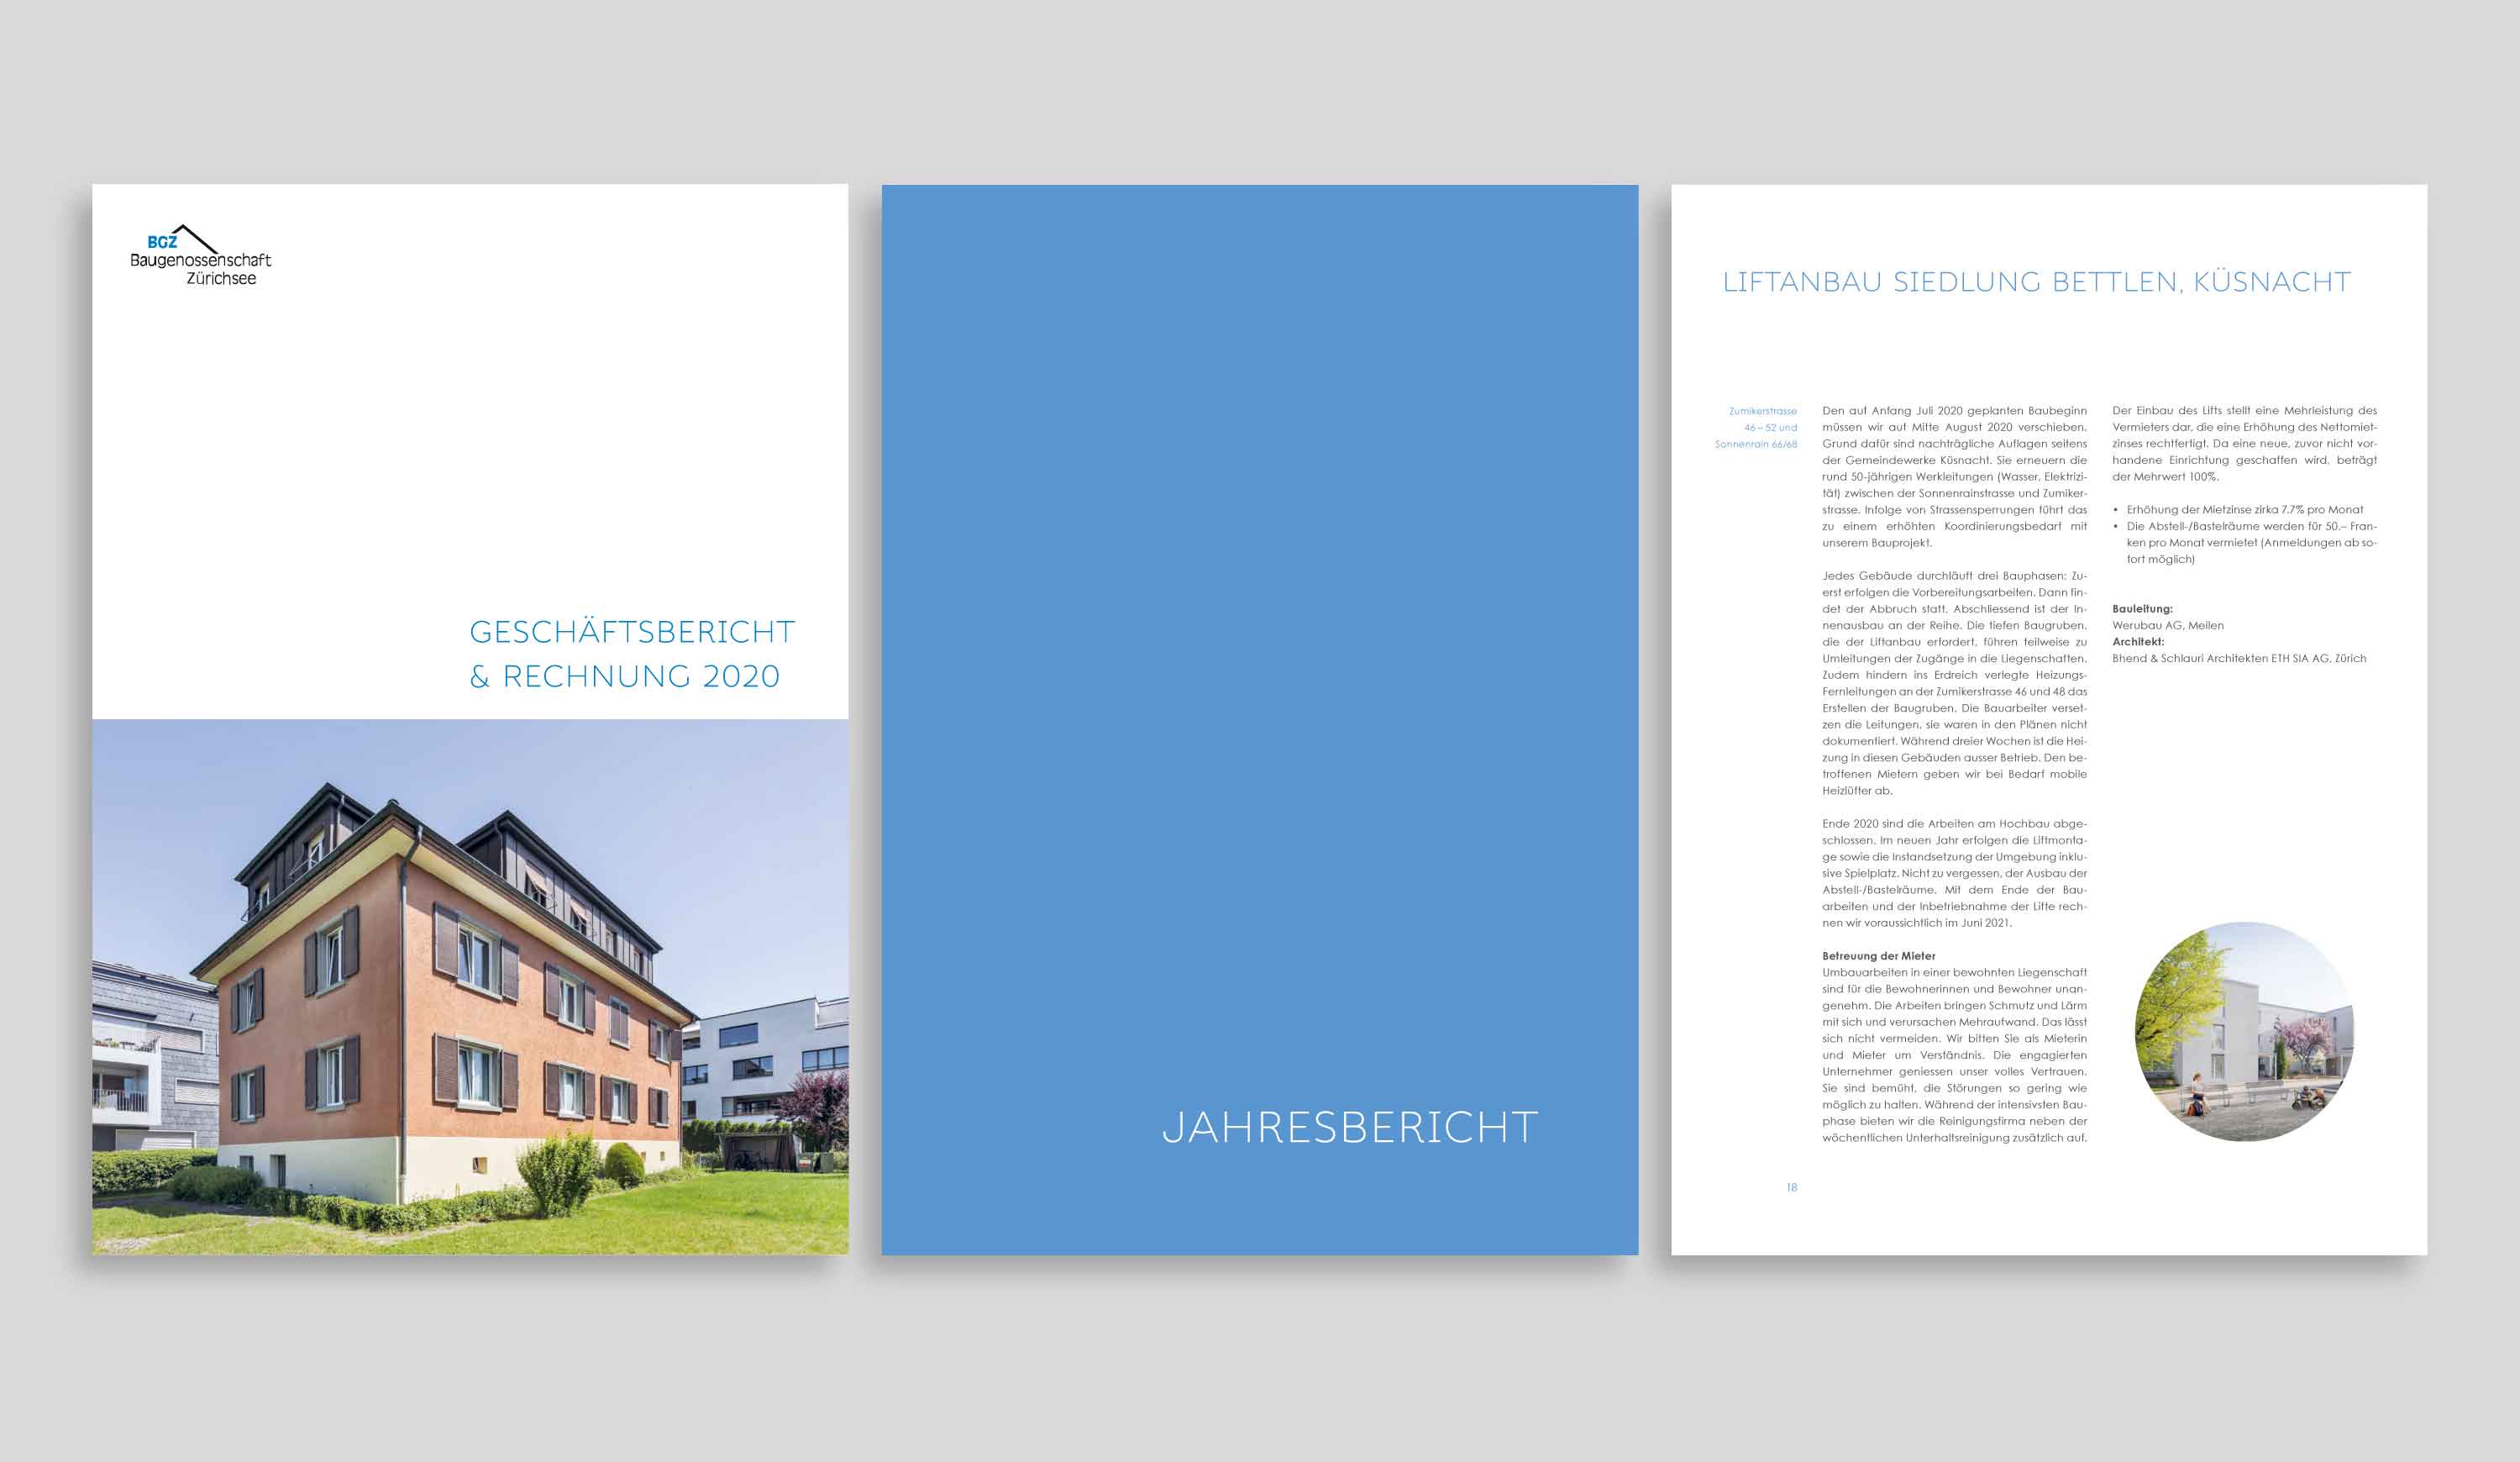 Geschäftsbericht 2020, BGZ Baugenossenschaft Zürichsee Küsnacht